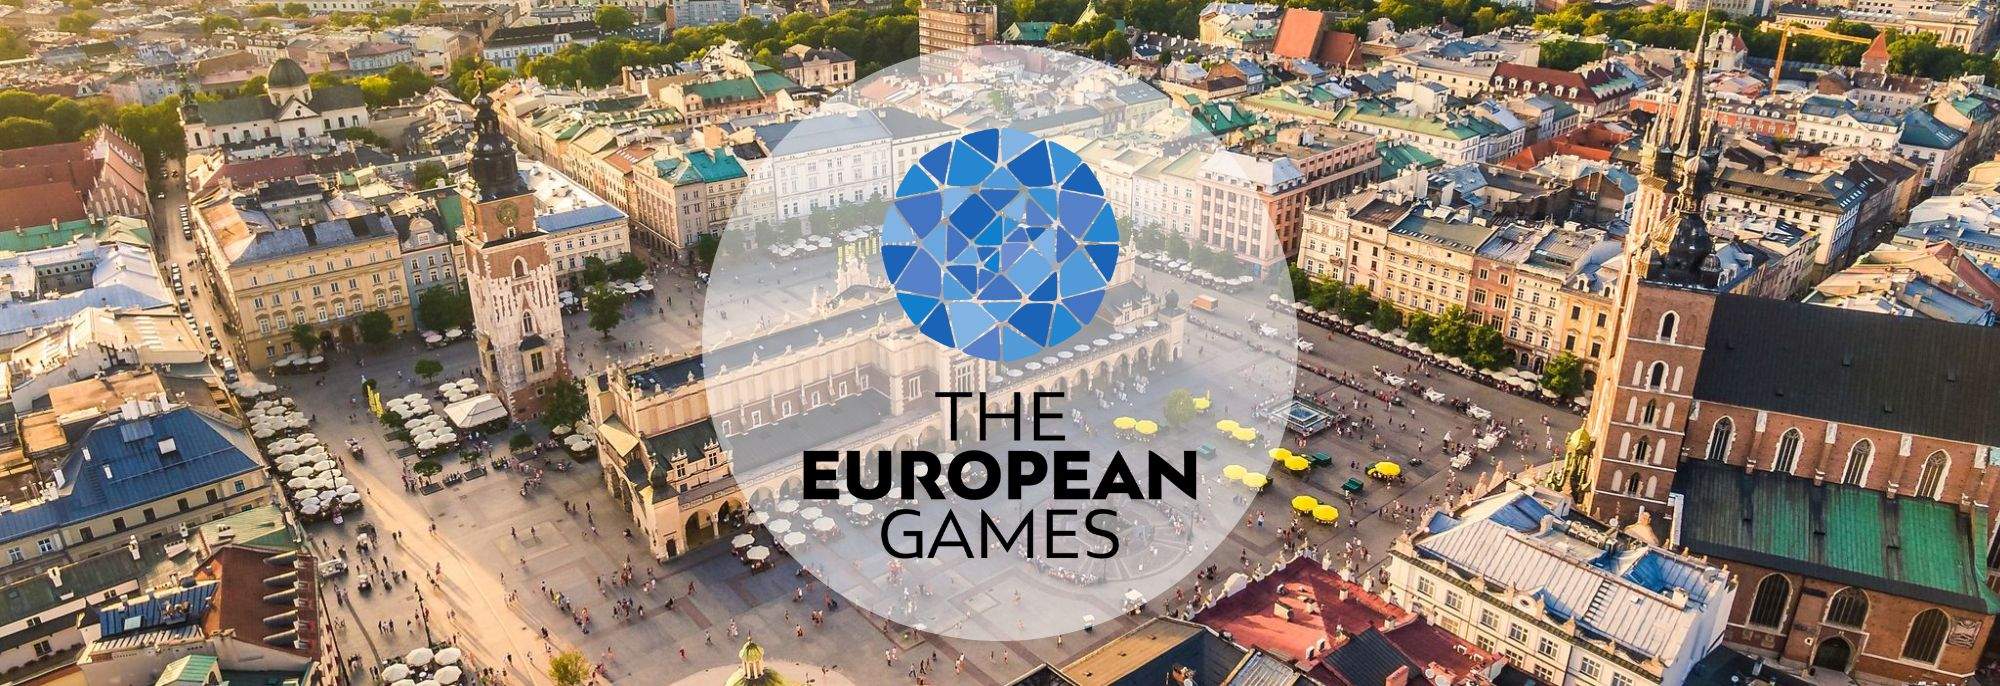 Eröffnung der III Europäischen Spiele in Krakau und Malopolska 2023 – Ein Spektakel aus Sport und Kultur